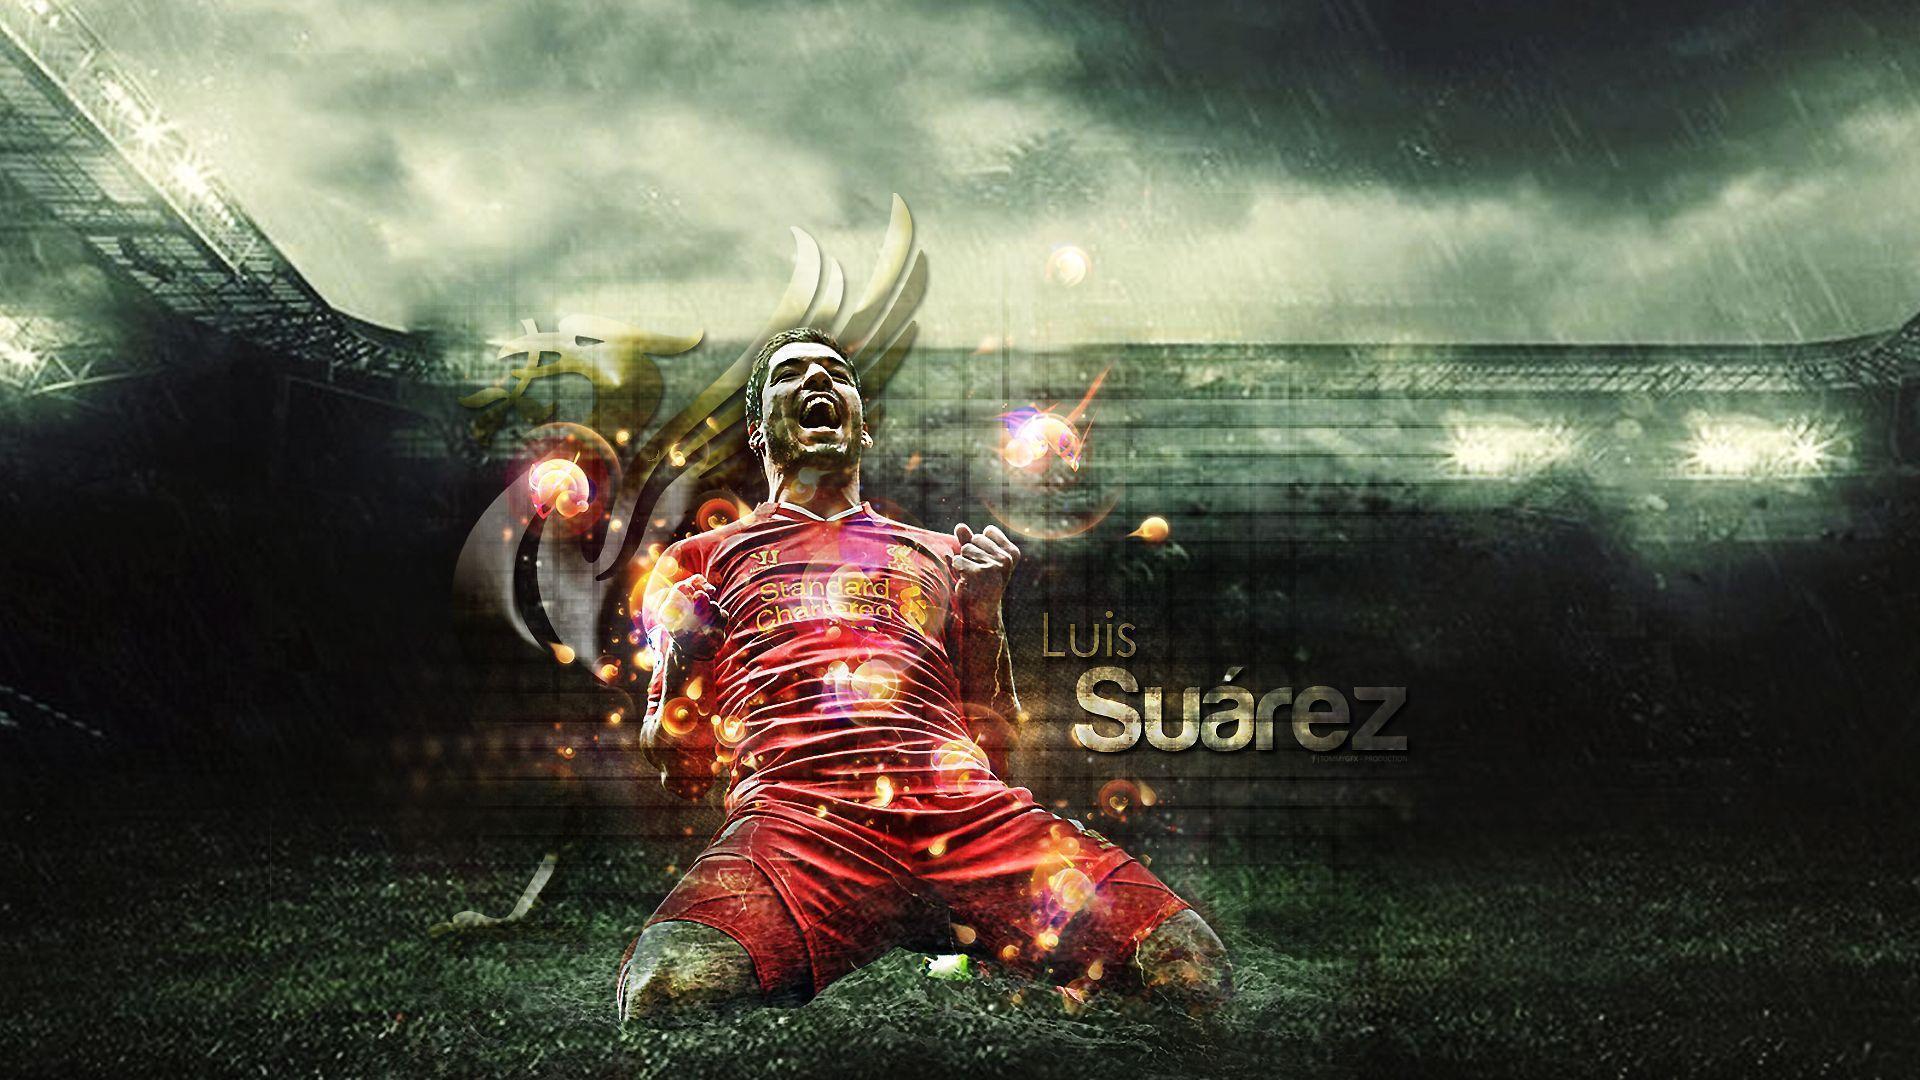 Luis Suarez. HD Football Wallpaper